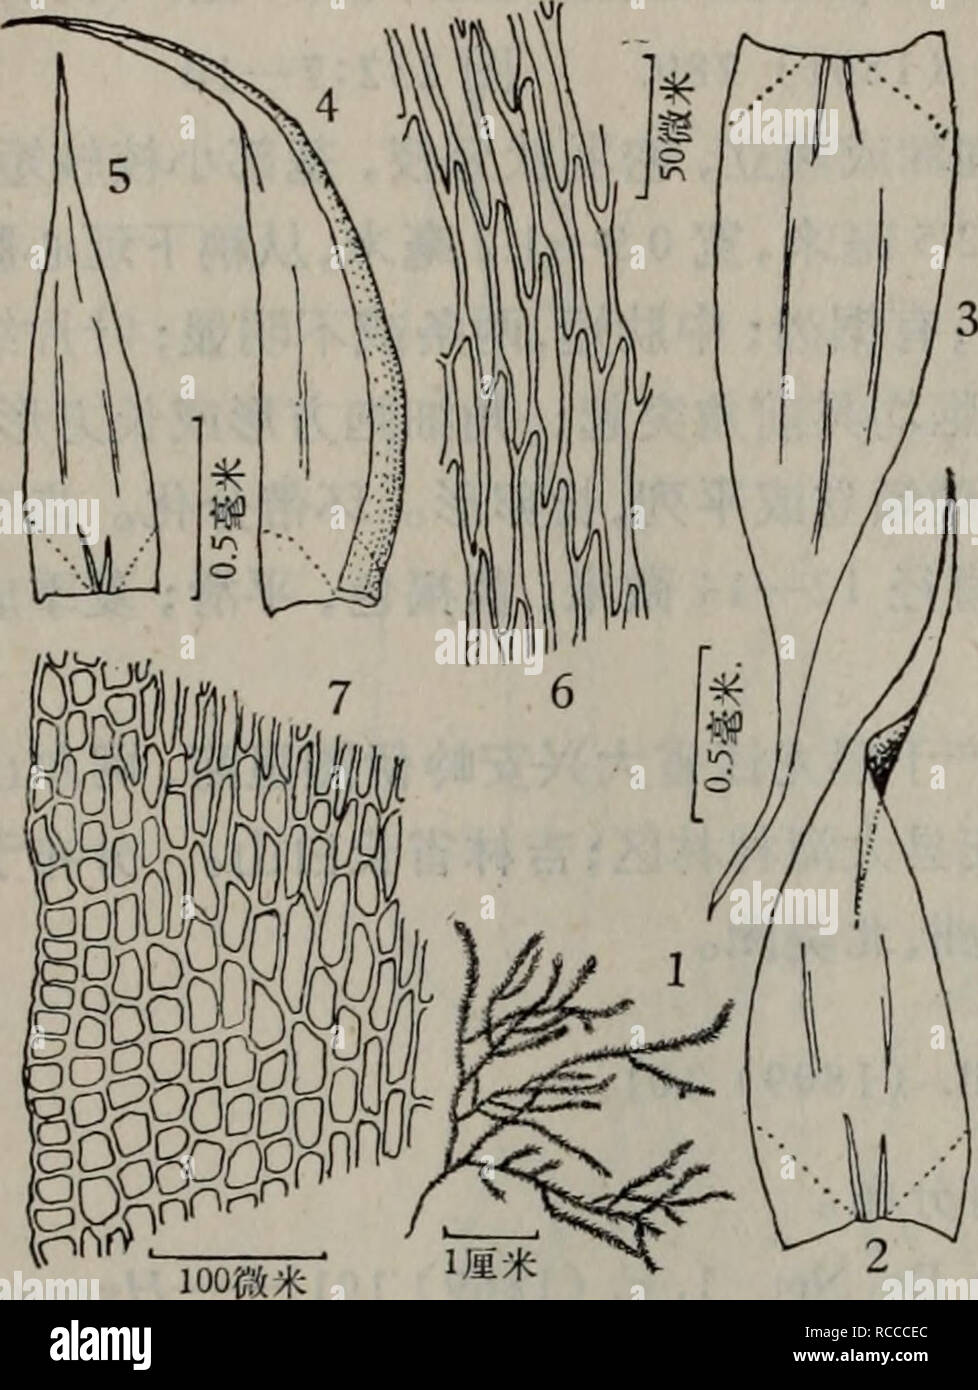 . dong bei xian lei zhi wu zhi. botany. Tuugaea brachythectella Ando, Journ. Jap. Bot. 33 (1958) 177ï¼ fig. I, 2. Stereodon plicatus Warnst., Hedwigia, 57 (1915â1916) 125ï¼ fig. 58. Hypnum plicatum Reim. et Sak., Bot. Jahrb. 64 (1931) 557. Hondaella aulacophylla Dix. et Sak&quot; Bot. Mag. Tokyo, 52 (1938) 133, fig. 6. Orthothecium japonicum Sak., Muse. Jap. (1954) 148, pi. 58â1. Campylodontium gracile Card., Bull. Soc. Bot. Geneve s6r. 2ï¼ 5 (1913) 318. å¾237 æ¤ç©ä½å¯éä¸ç,é»ç»¿è²æè¤ç»¿è²ï¼æå æ³½ãèé¿è¾¾2åç±³ï¼ååæå¾ç«,æ¨ªåé¢åæ¤- åå½¢ï¼ä¸-è½´ååå¼±ï¼å¤è¢«2â3å±å°å½¢åå£ç» è,åºæ¬ç»ç»ç»èå¤§,èå£ï¼ä¸è§ Stock Photo